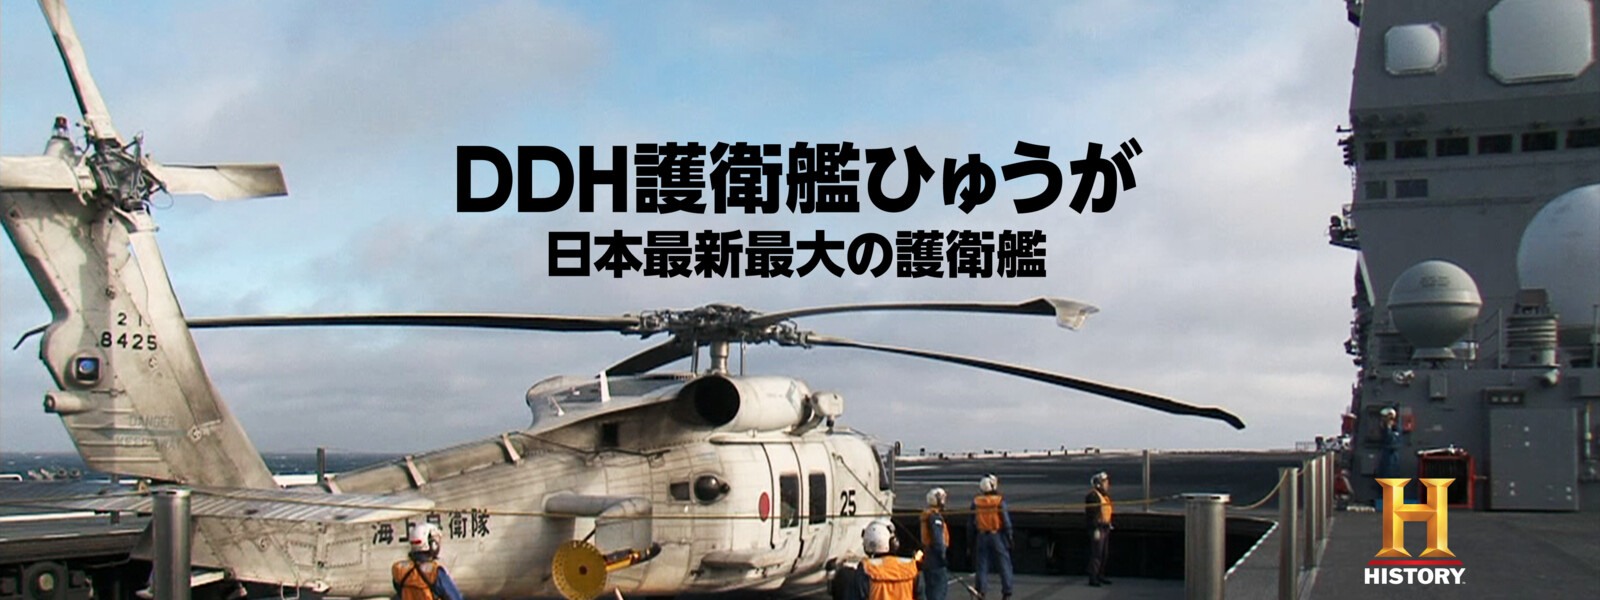 DDH護衛艦ひゅうが 日本最新最大の護衛艦 動画